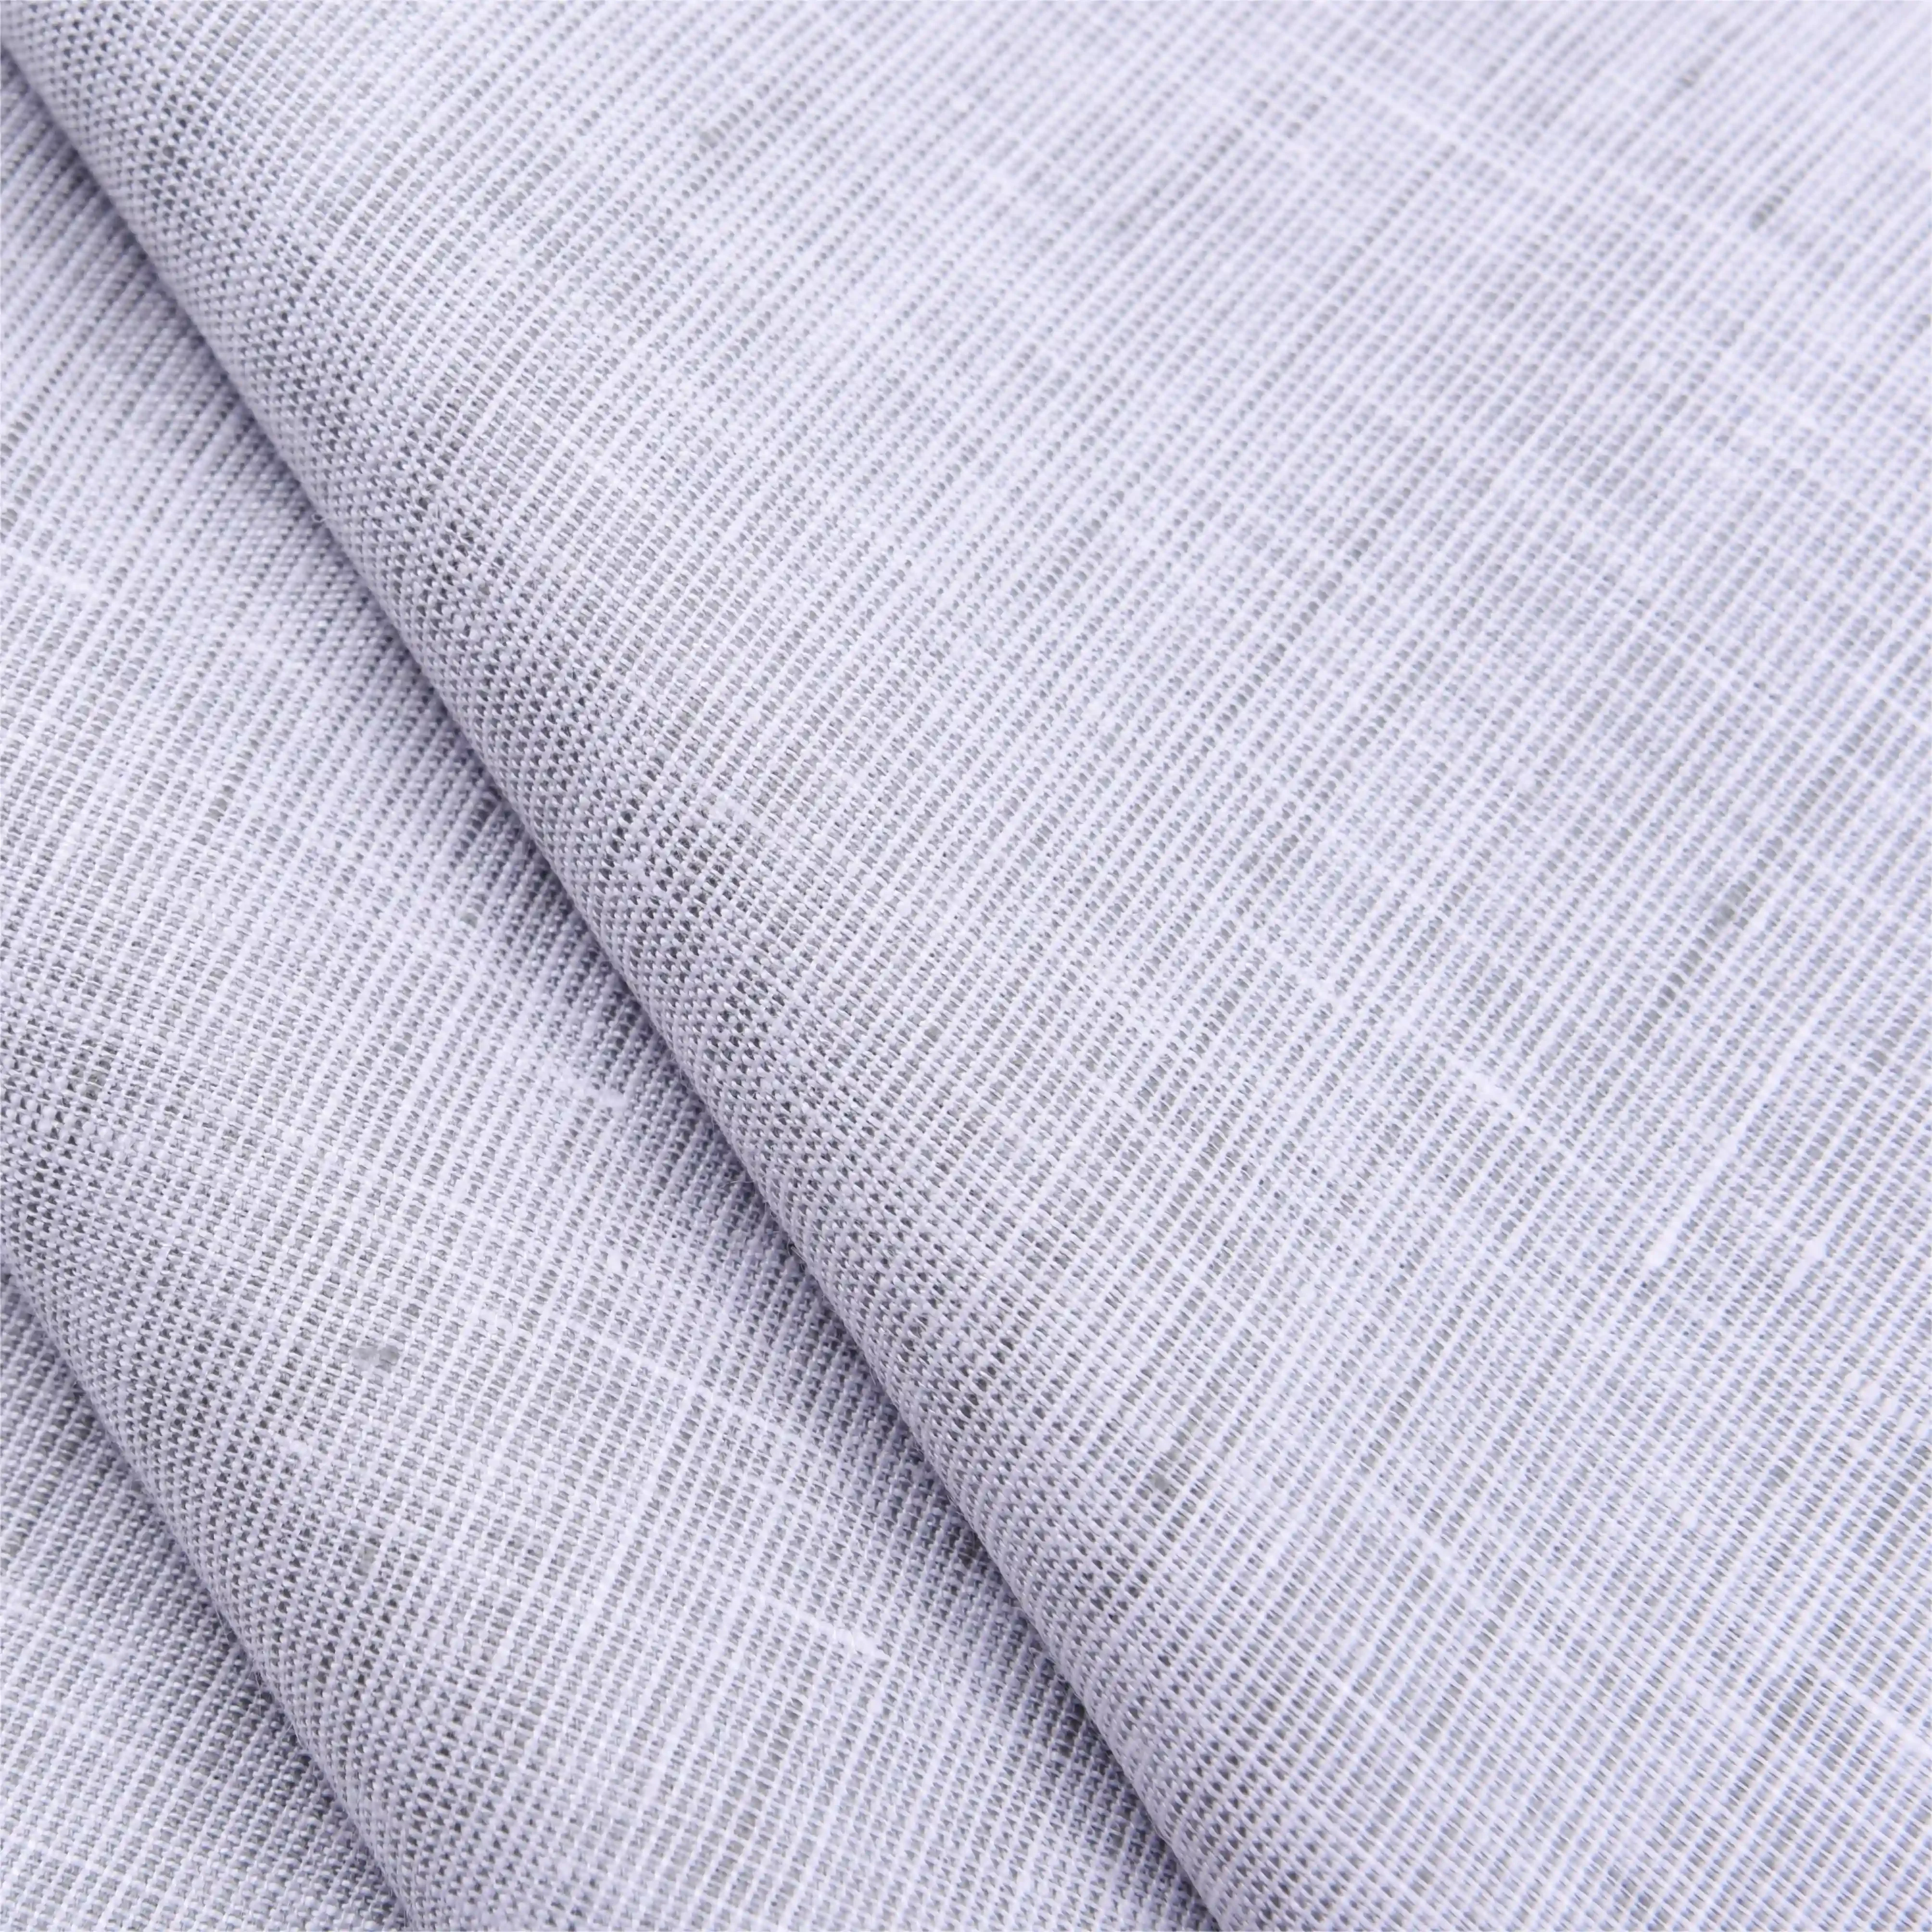 Clean Linen Woven Fabric